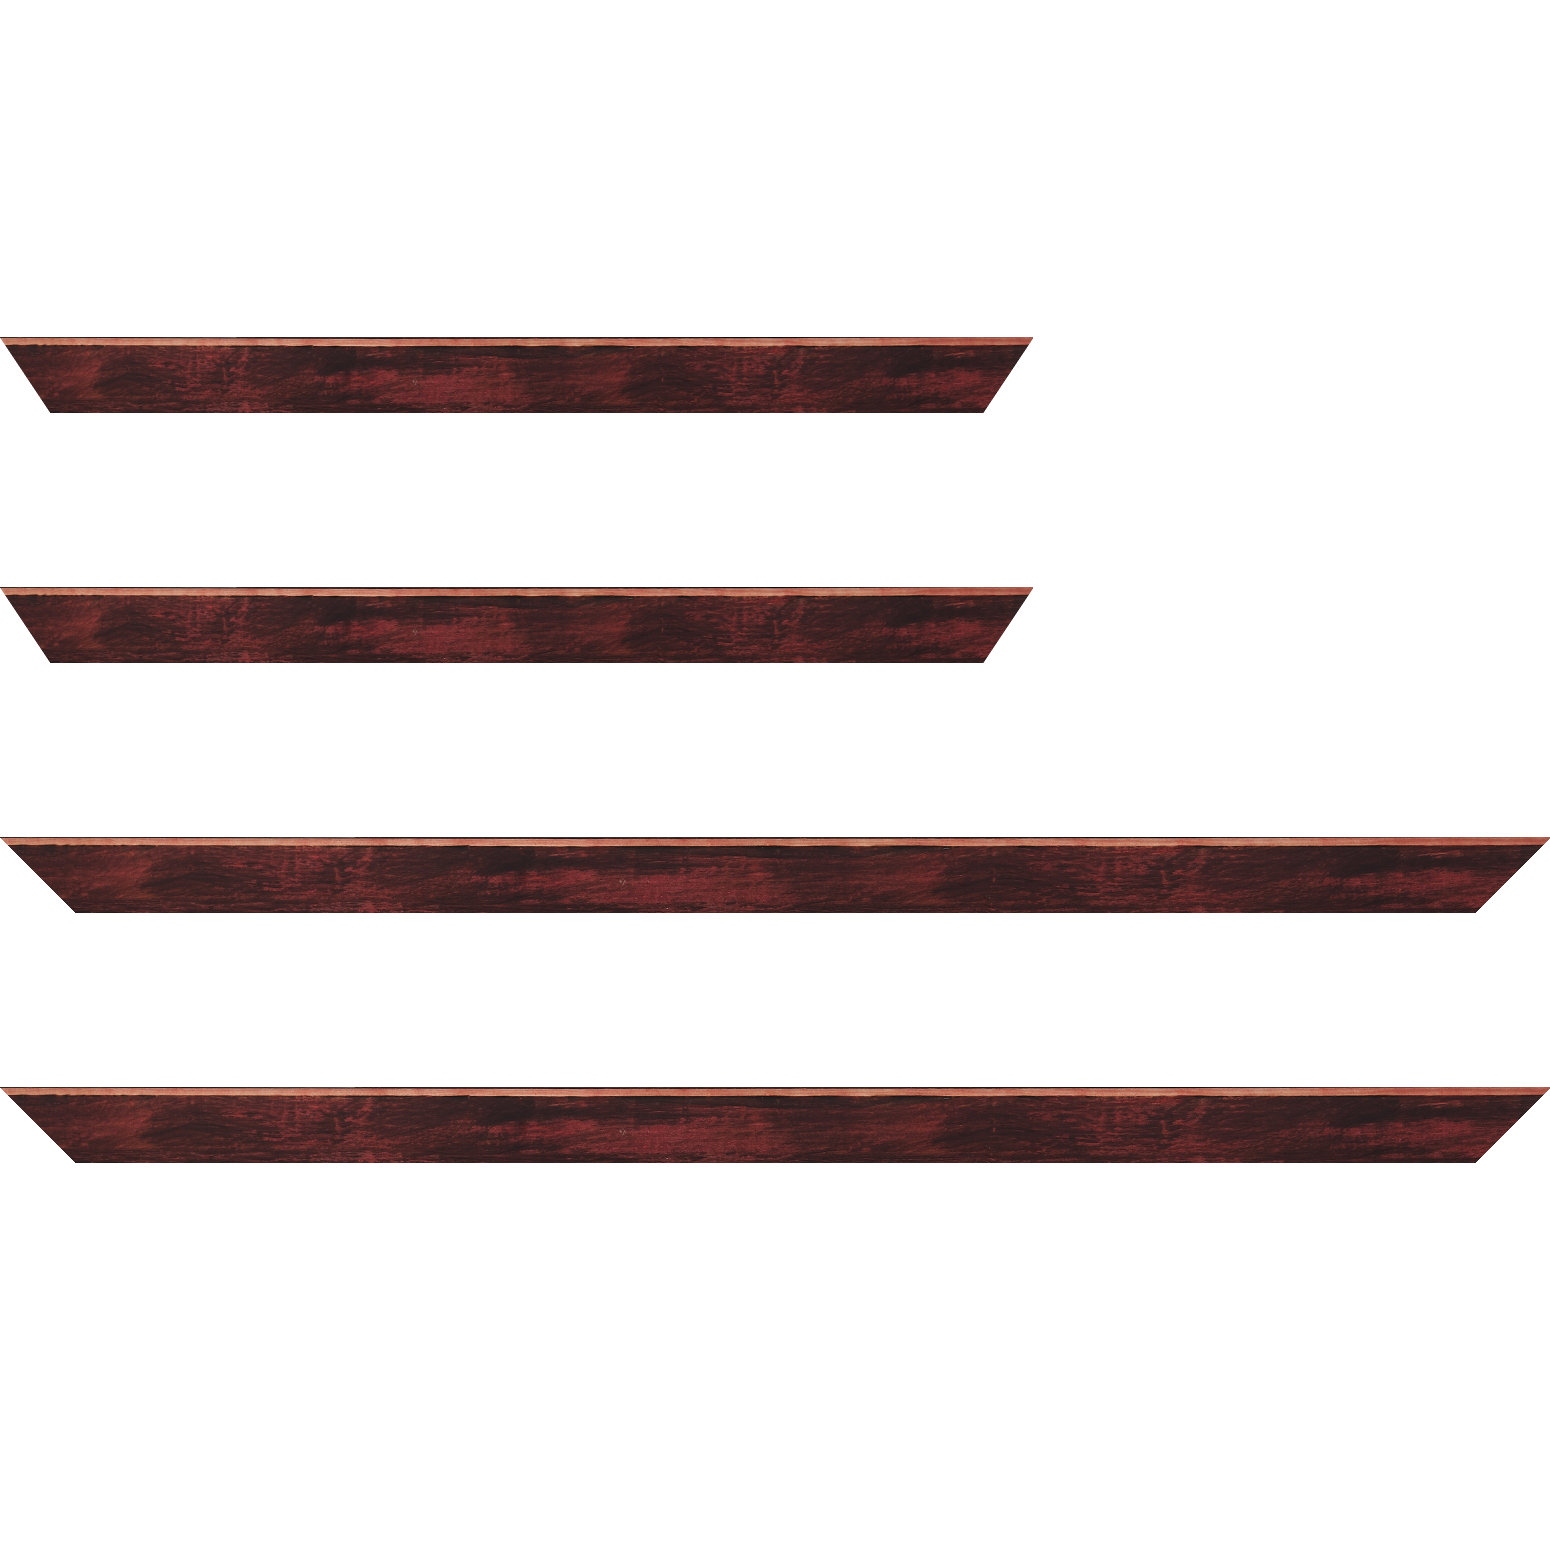 Baguette bois profil arrondi en pente plongeant largeur 2.4cm couleur bordeaux effet ressuyé, angle du cadre extérieur filet naturel - 40x60